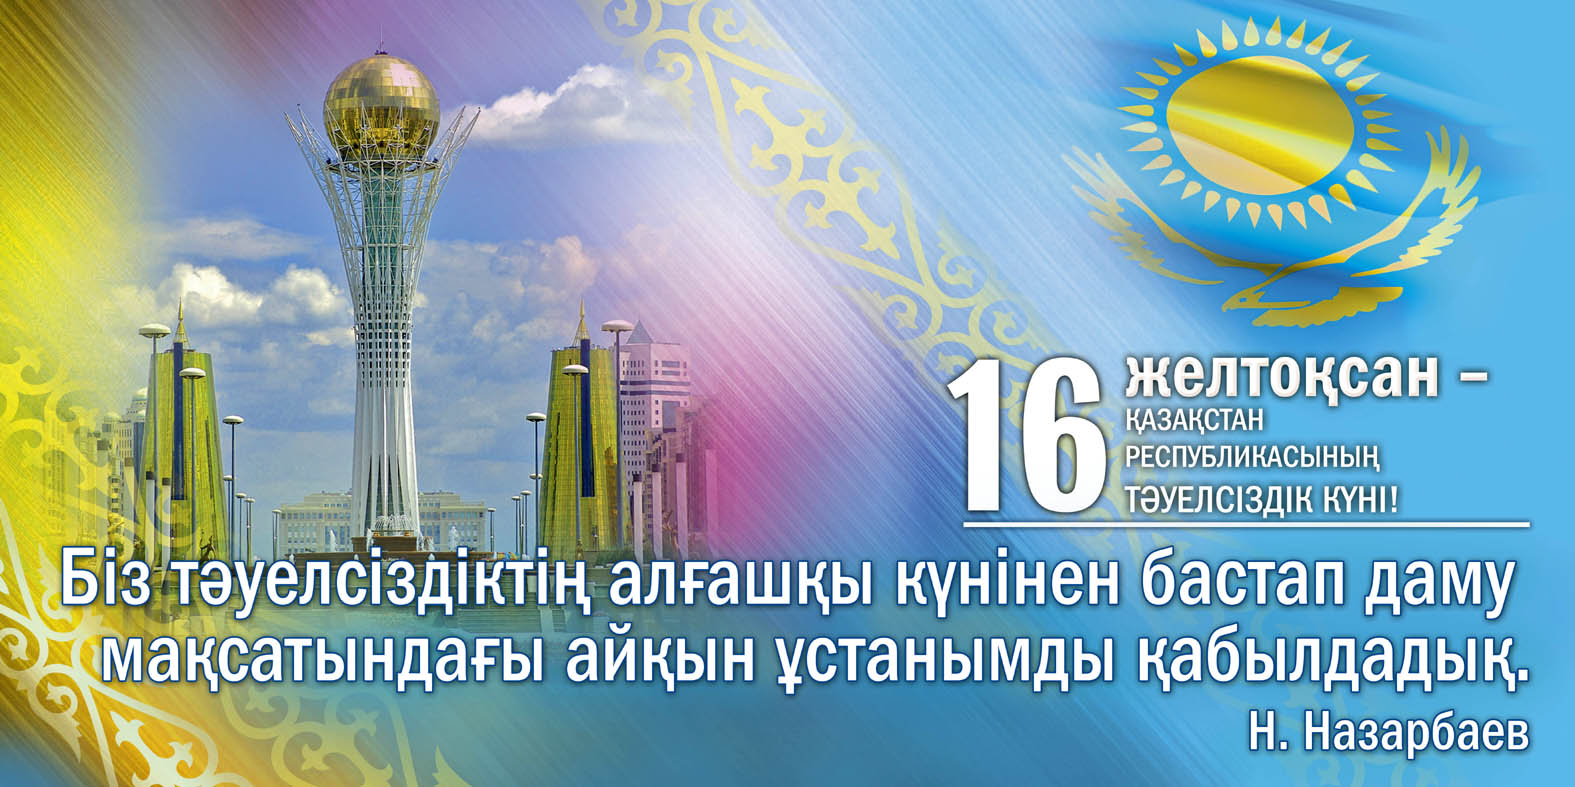 Казахстан - Сценарий праздника «День Независимости Республики Казахстан»